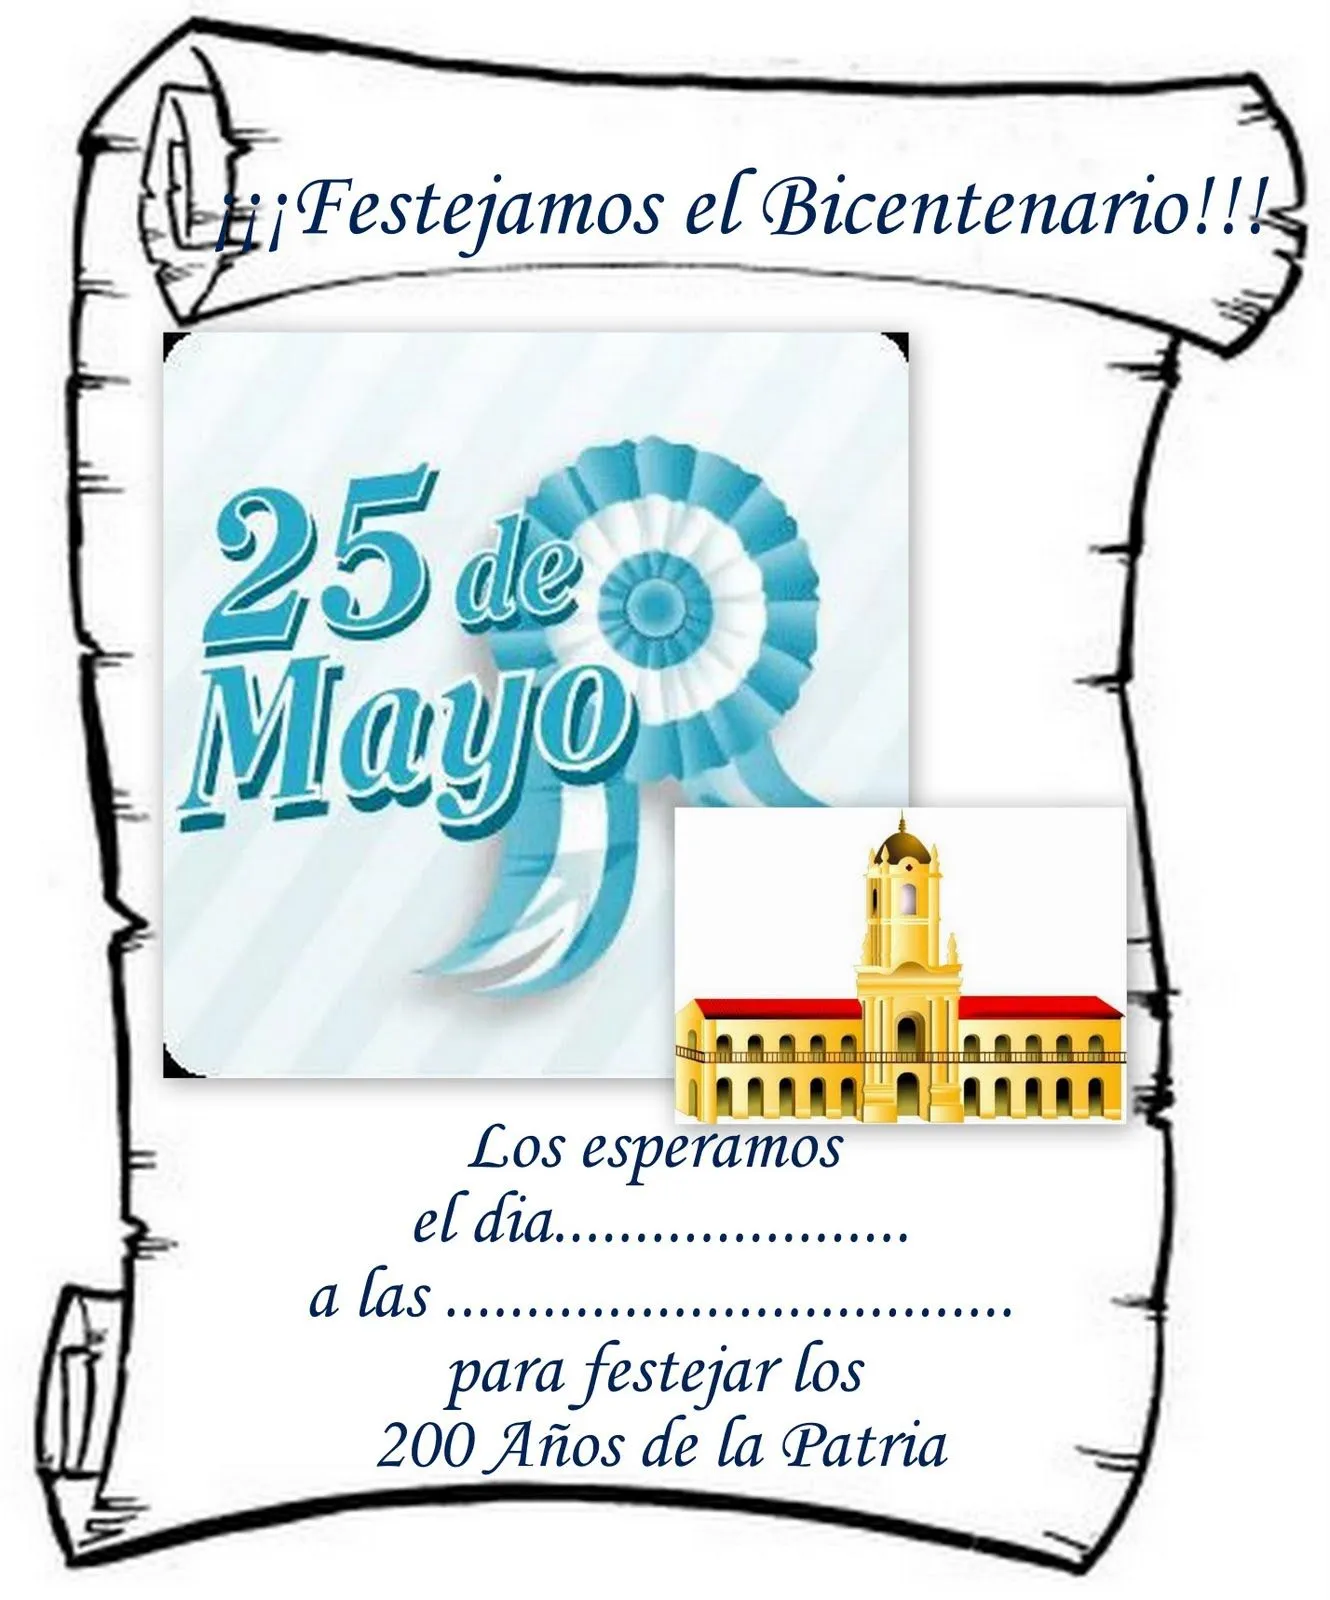 SECRETOS: Invitacion para el Bicentenario